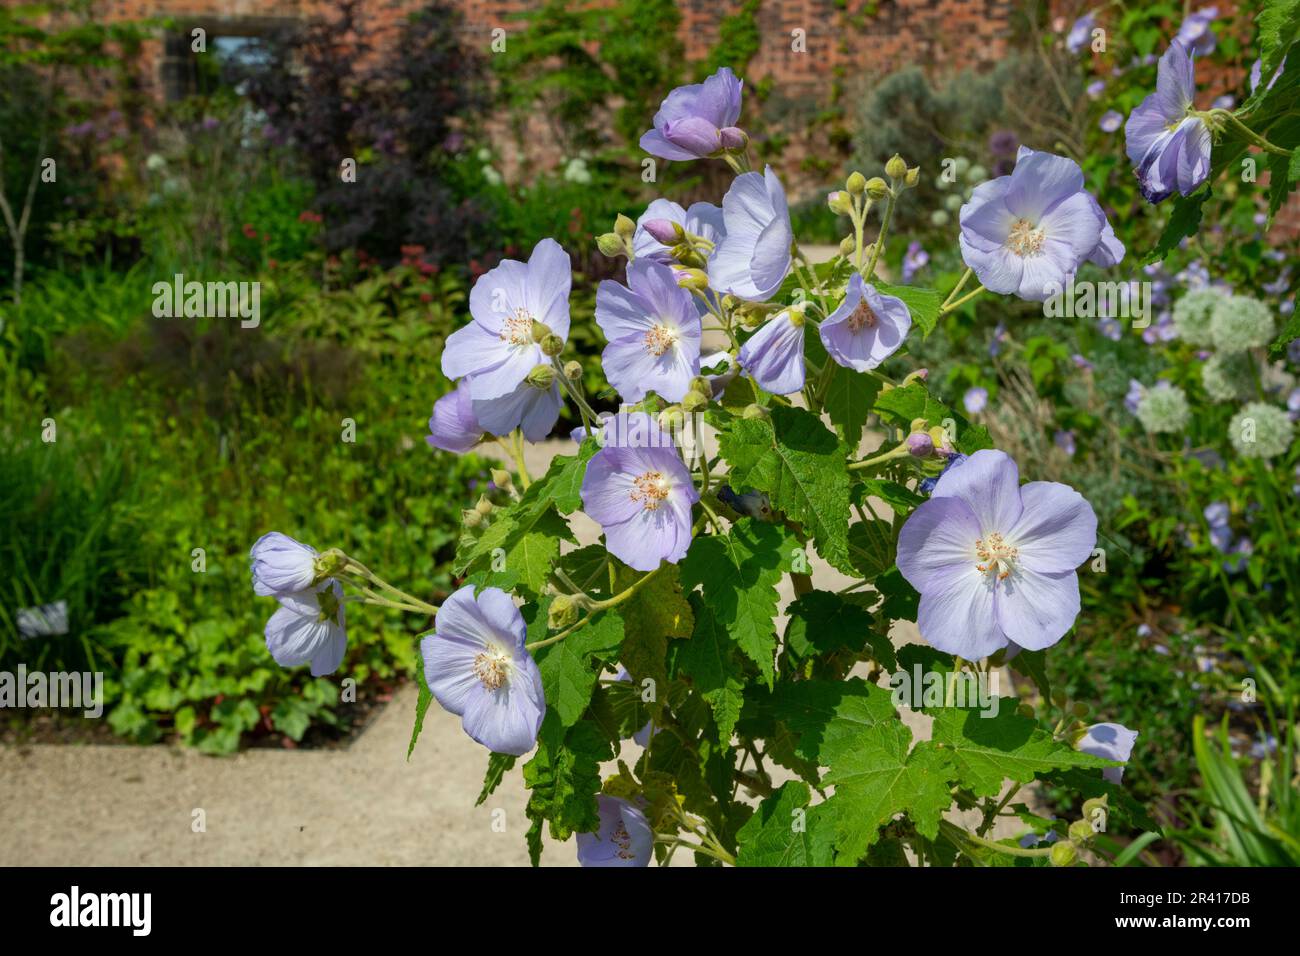 Abutilon Suntense 'Jermyn's' flowering in a walled garden in early summer Stock Photo